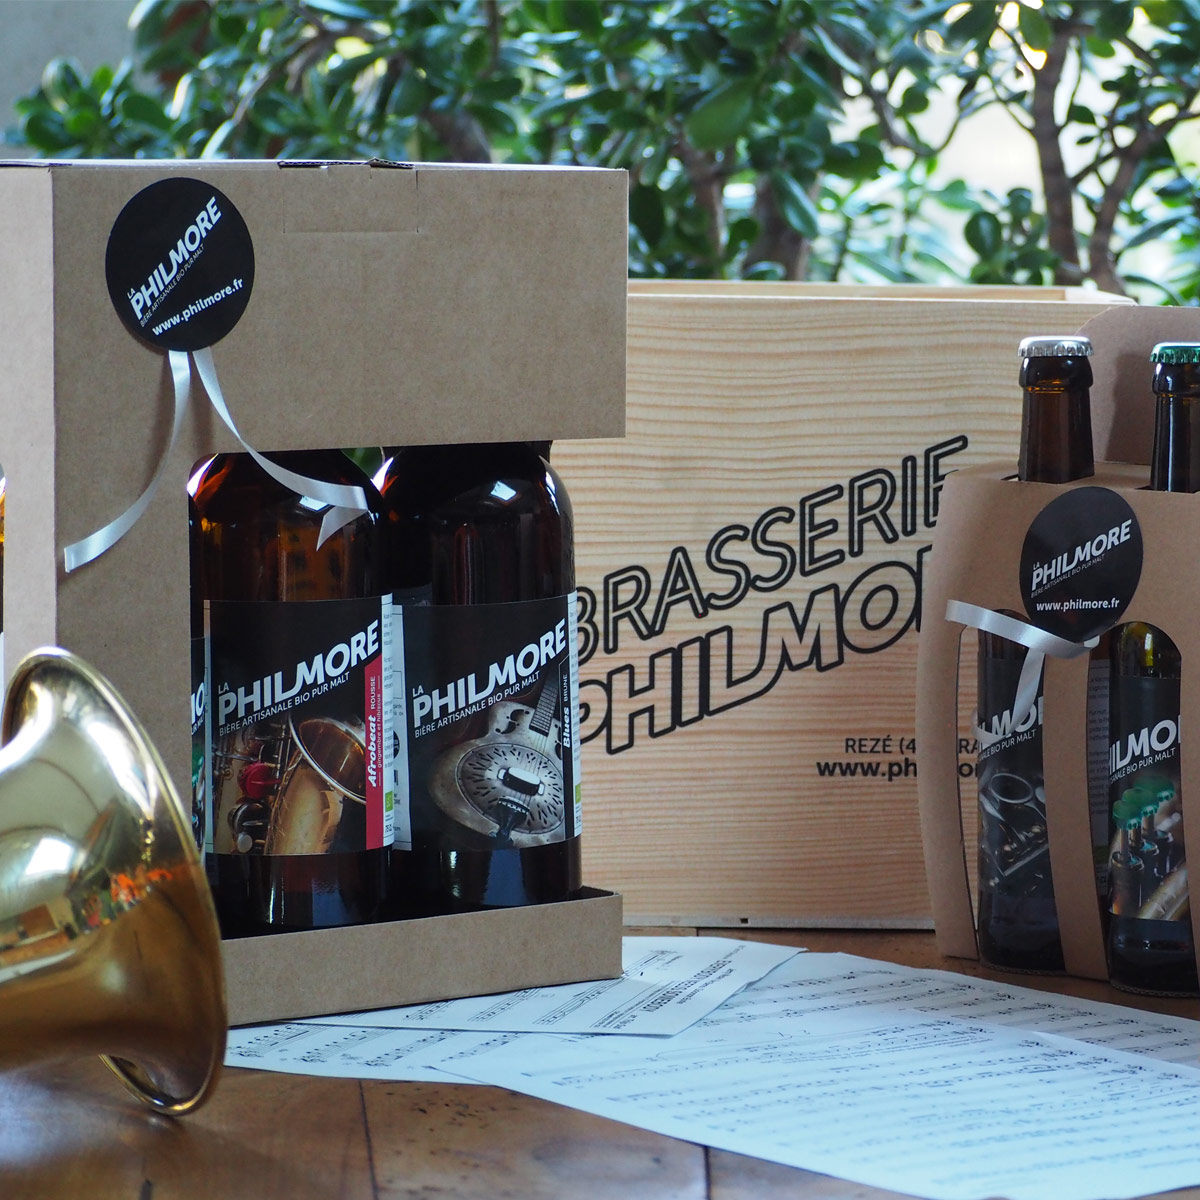 La Philmore – coffrets cadeaux – bière bio artisanale pur malt